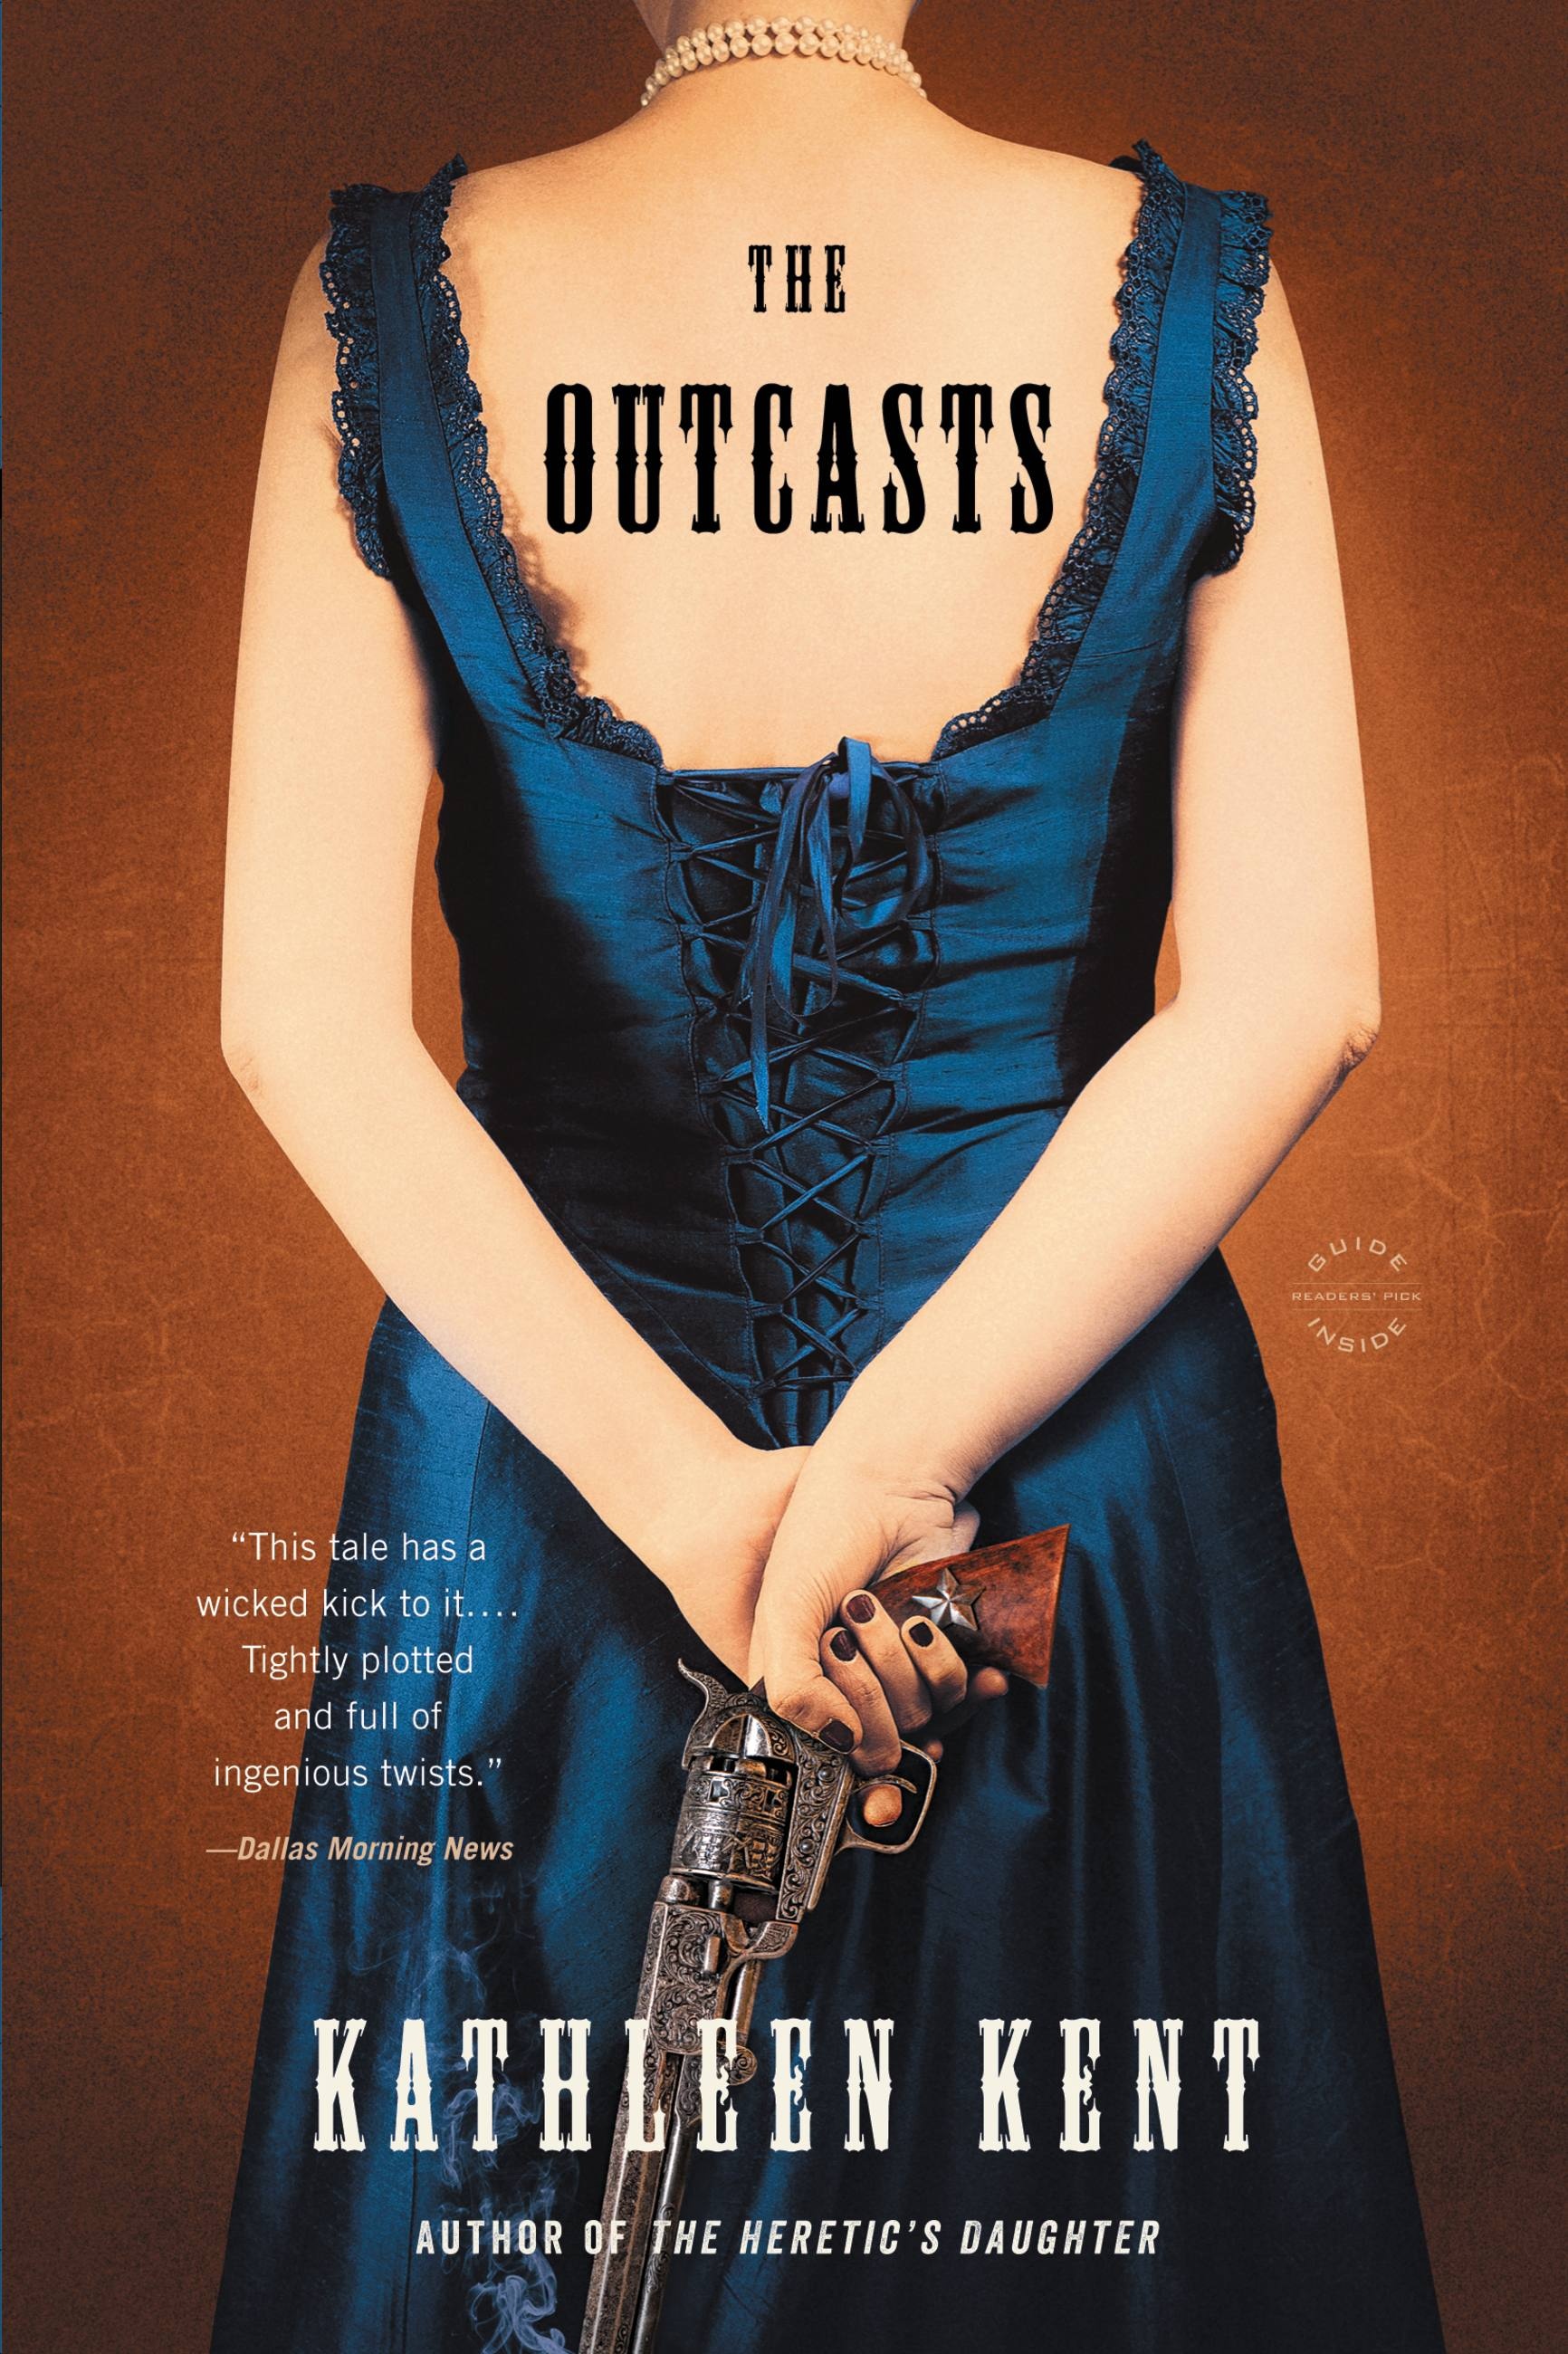 Фулл кати. Kathleen Kent "the Outcasts". Катлин Смит Автор книг. The Tale of the Outcasts.